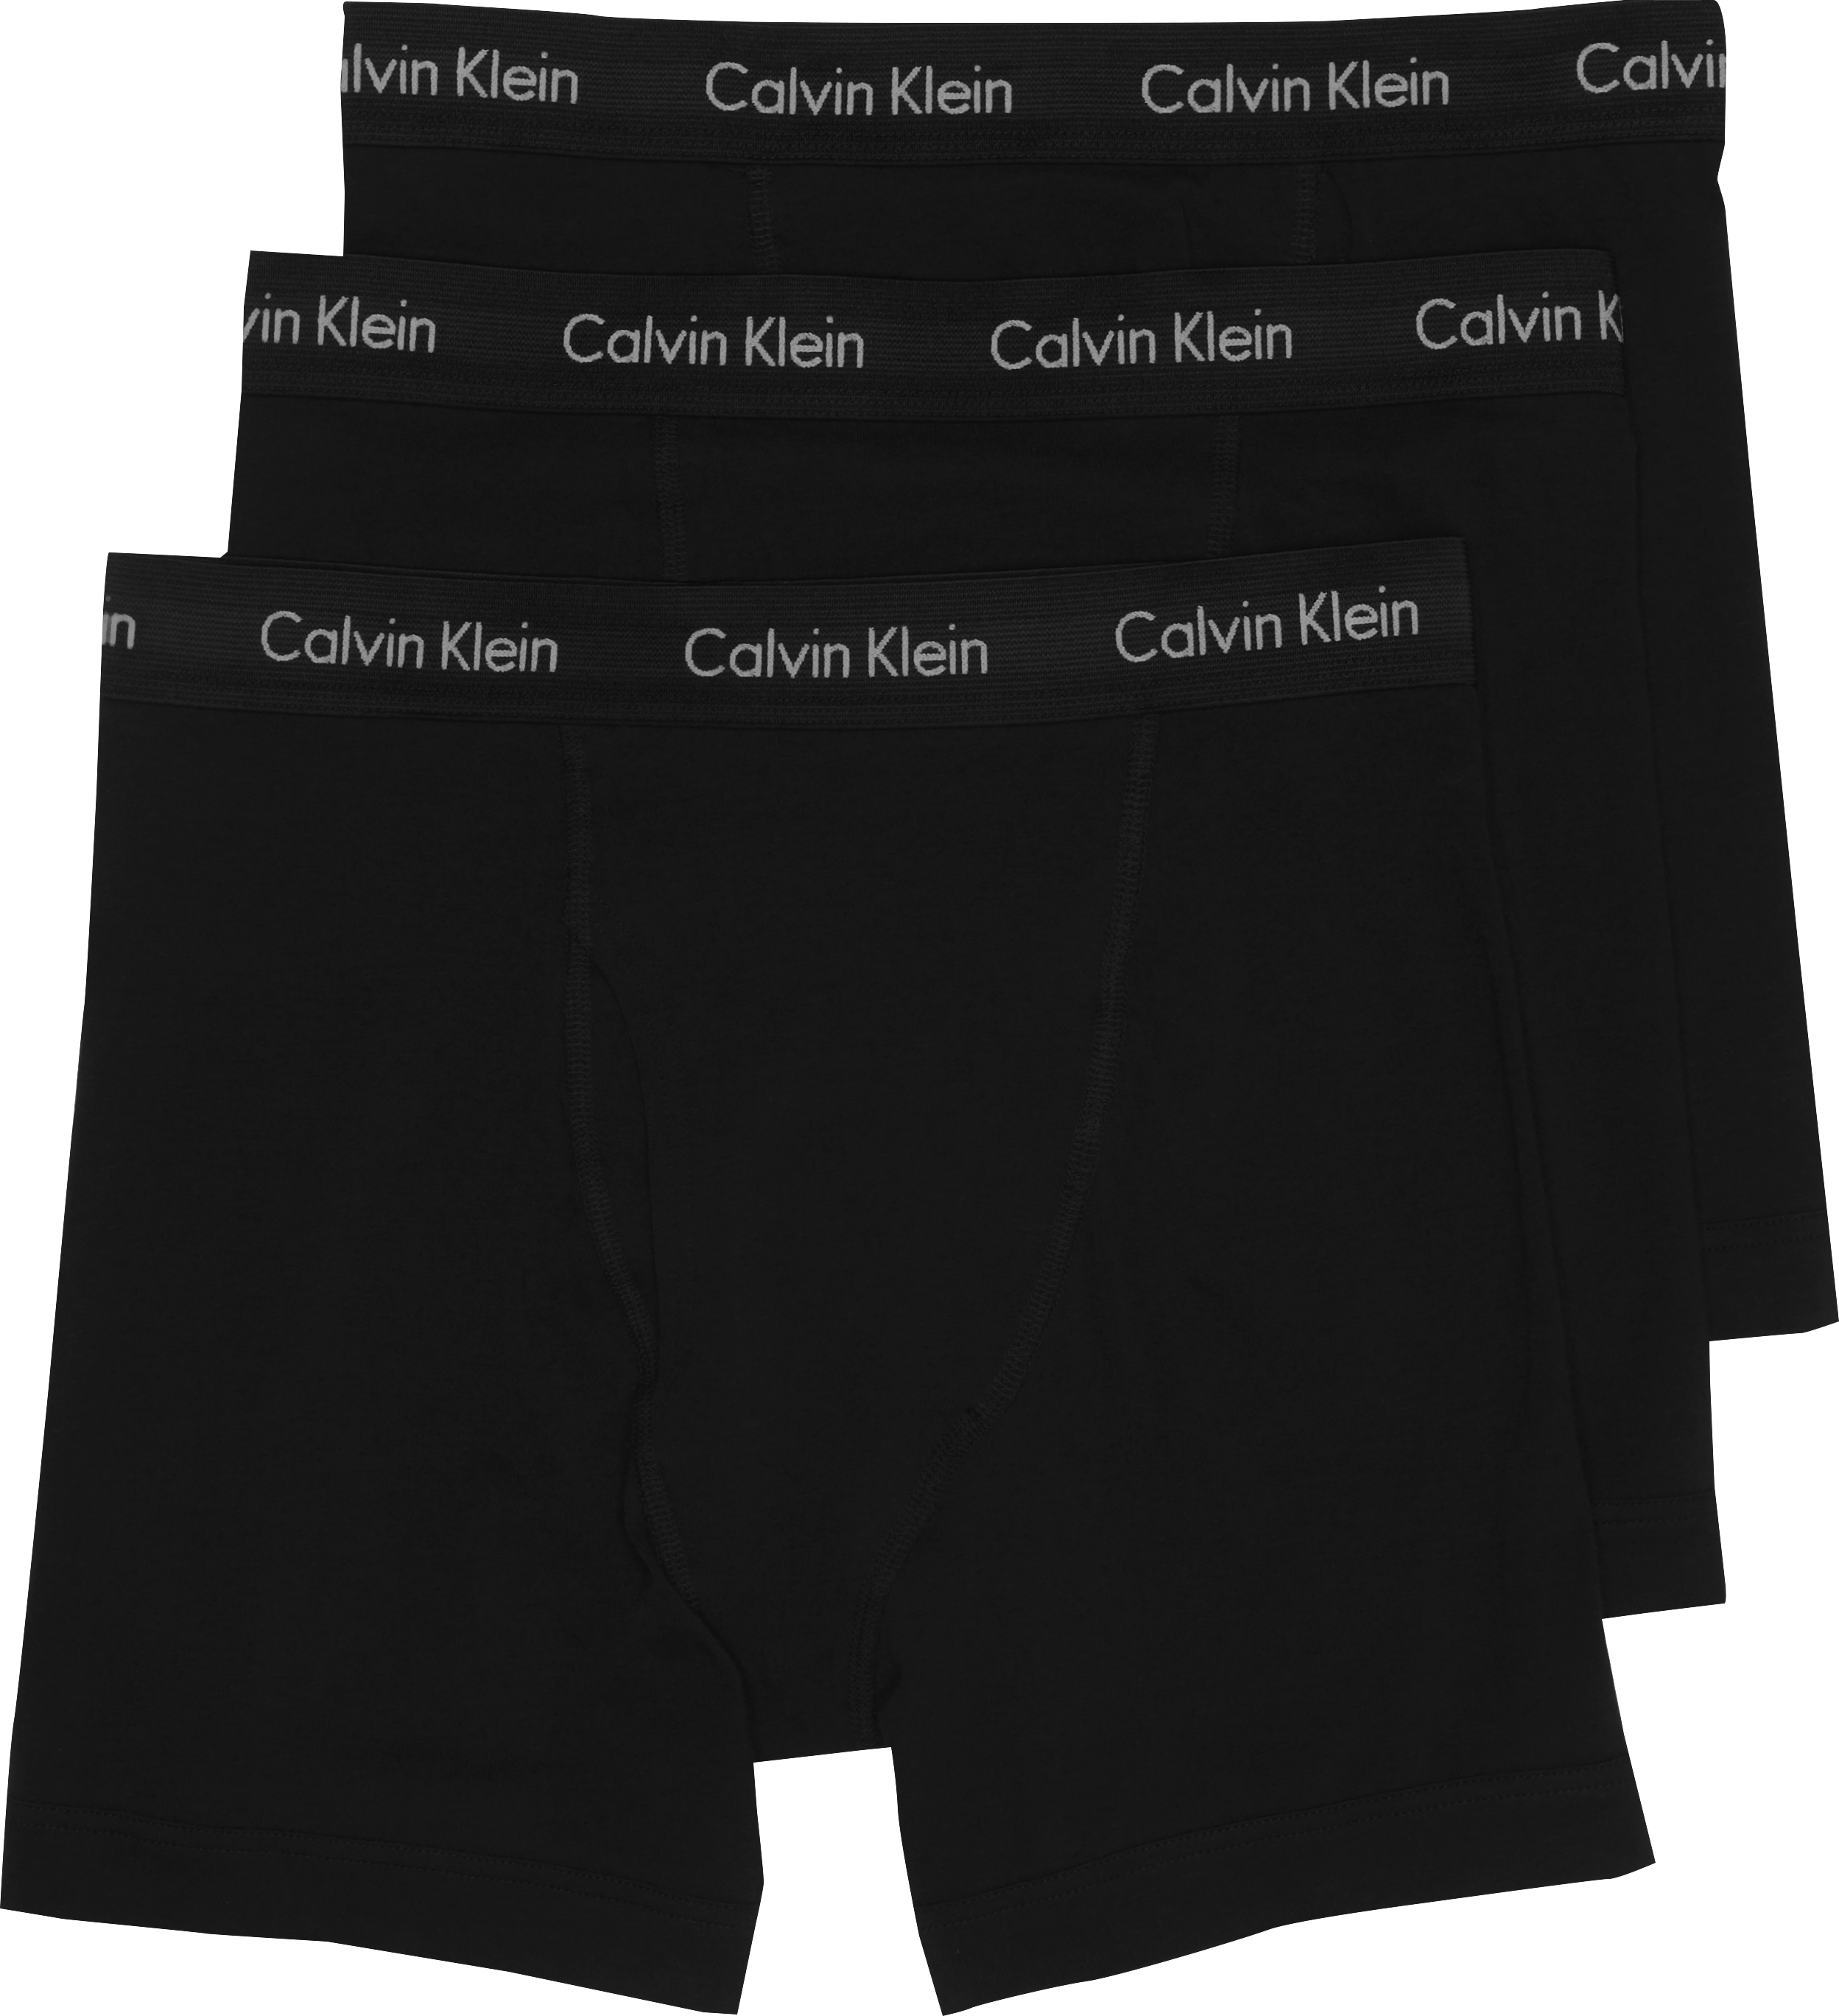 black and white calvin klein boxers